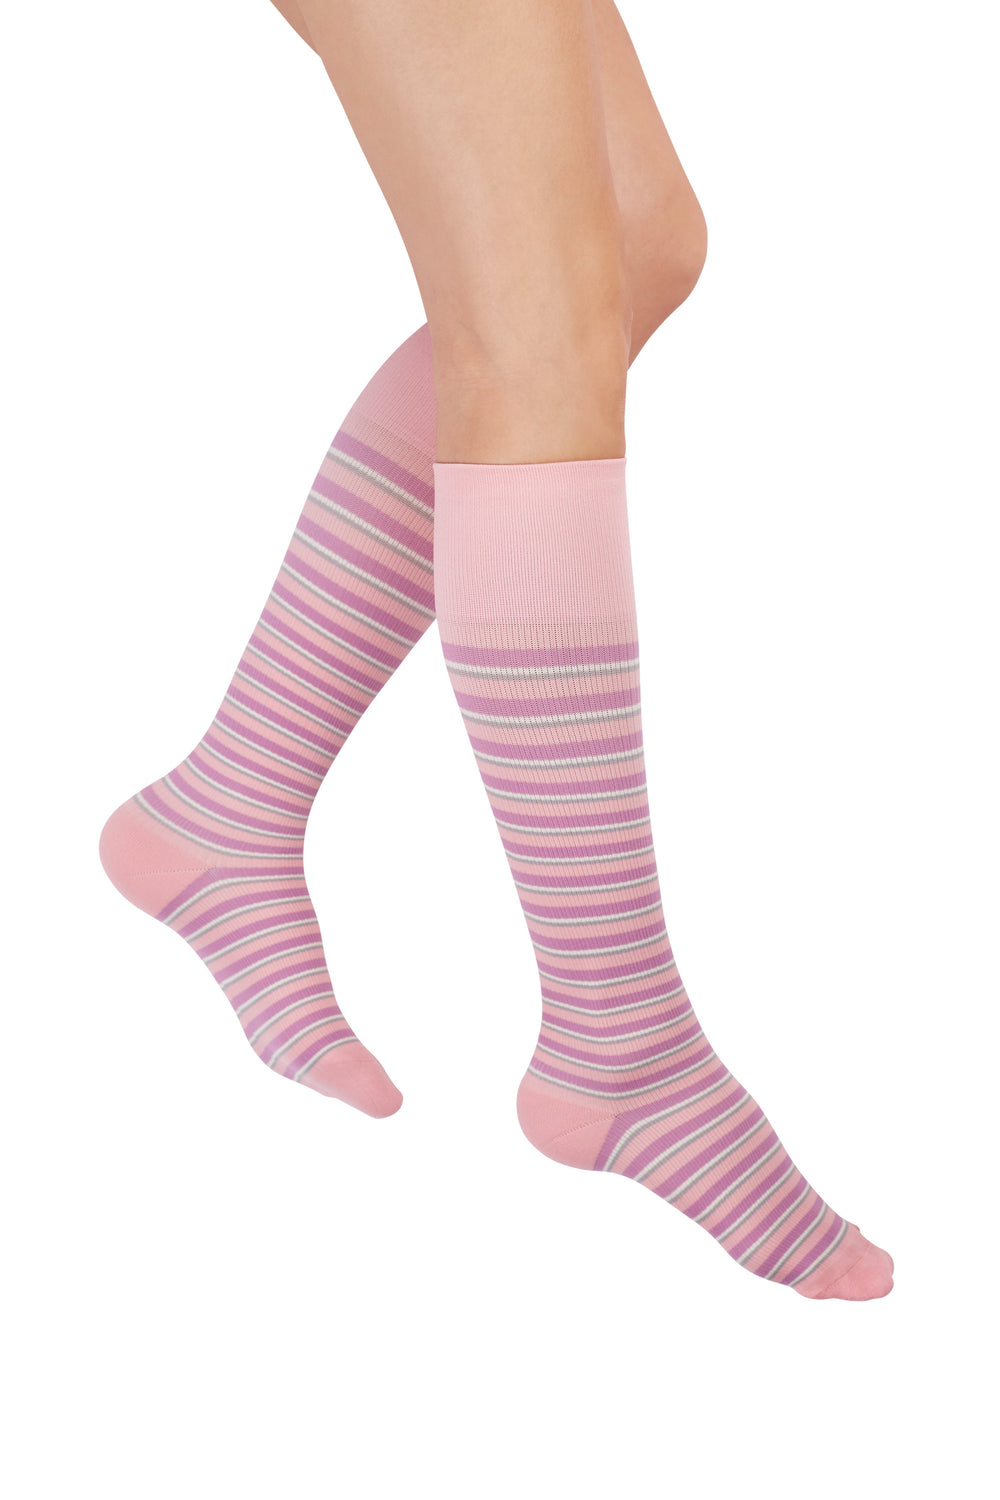 Rejuva ® Stripe Knee High 15-20 mmHg, Pink/Lilla